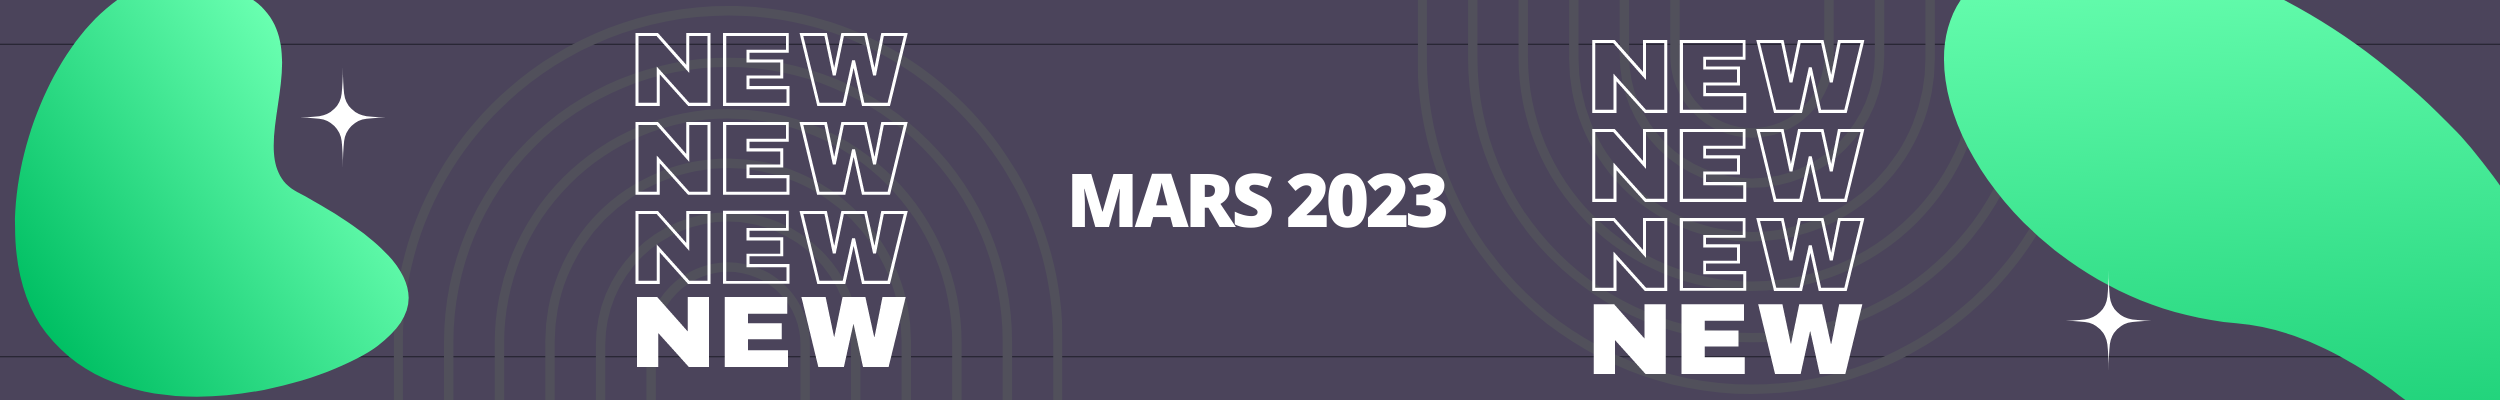 Les nouveaux jeux de société de Mars 2023